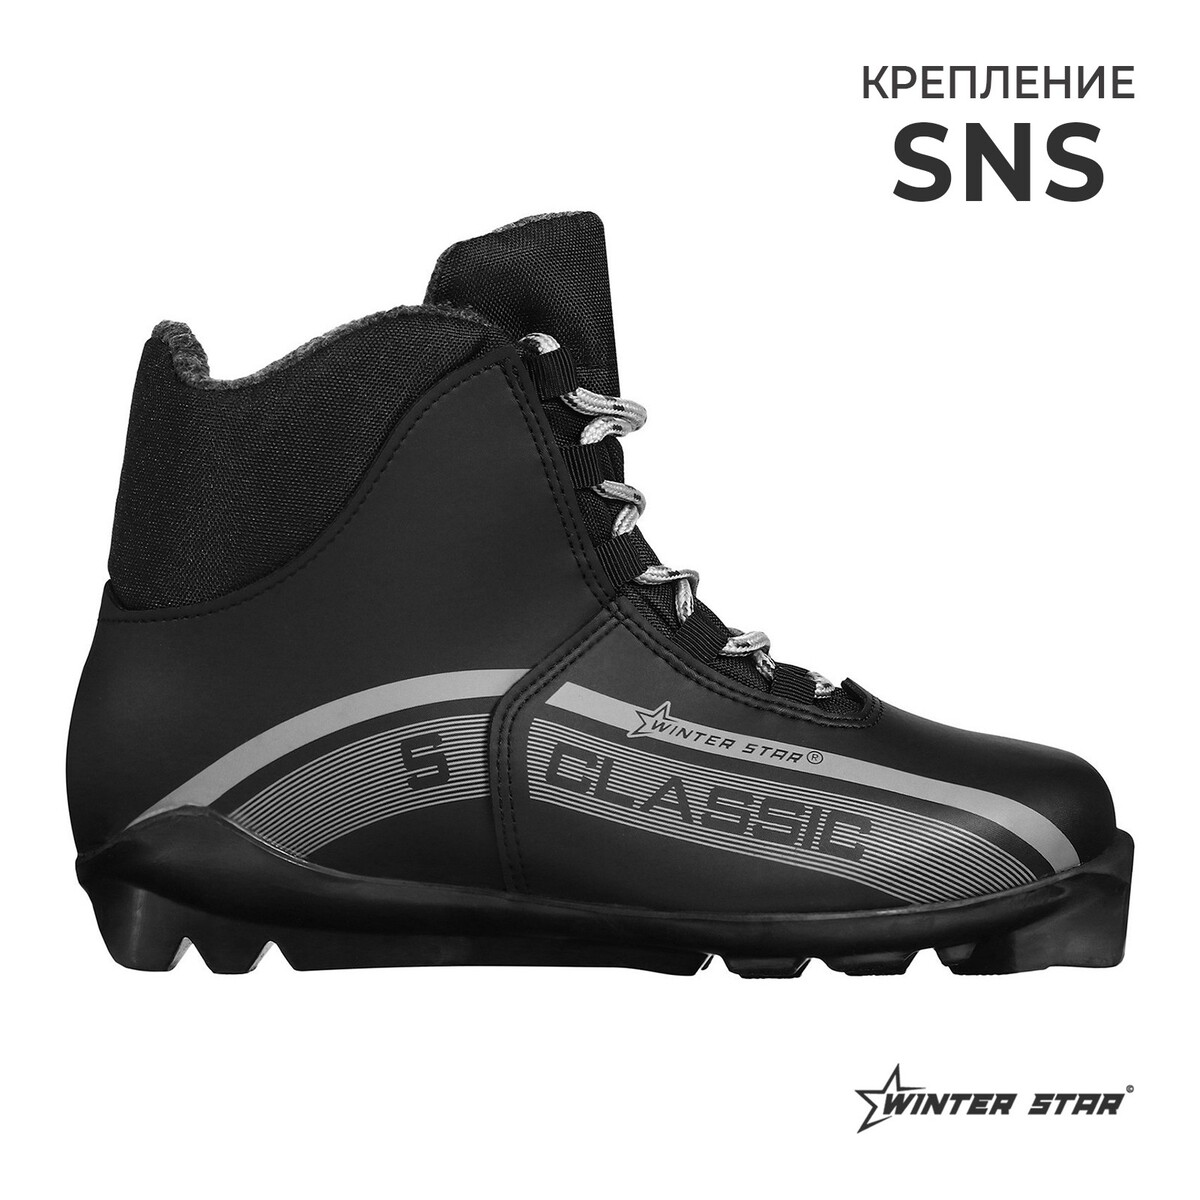 Ботинки лыжные winter star classic, sns, р. 46, цвет черный/серый